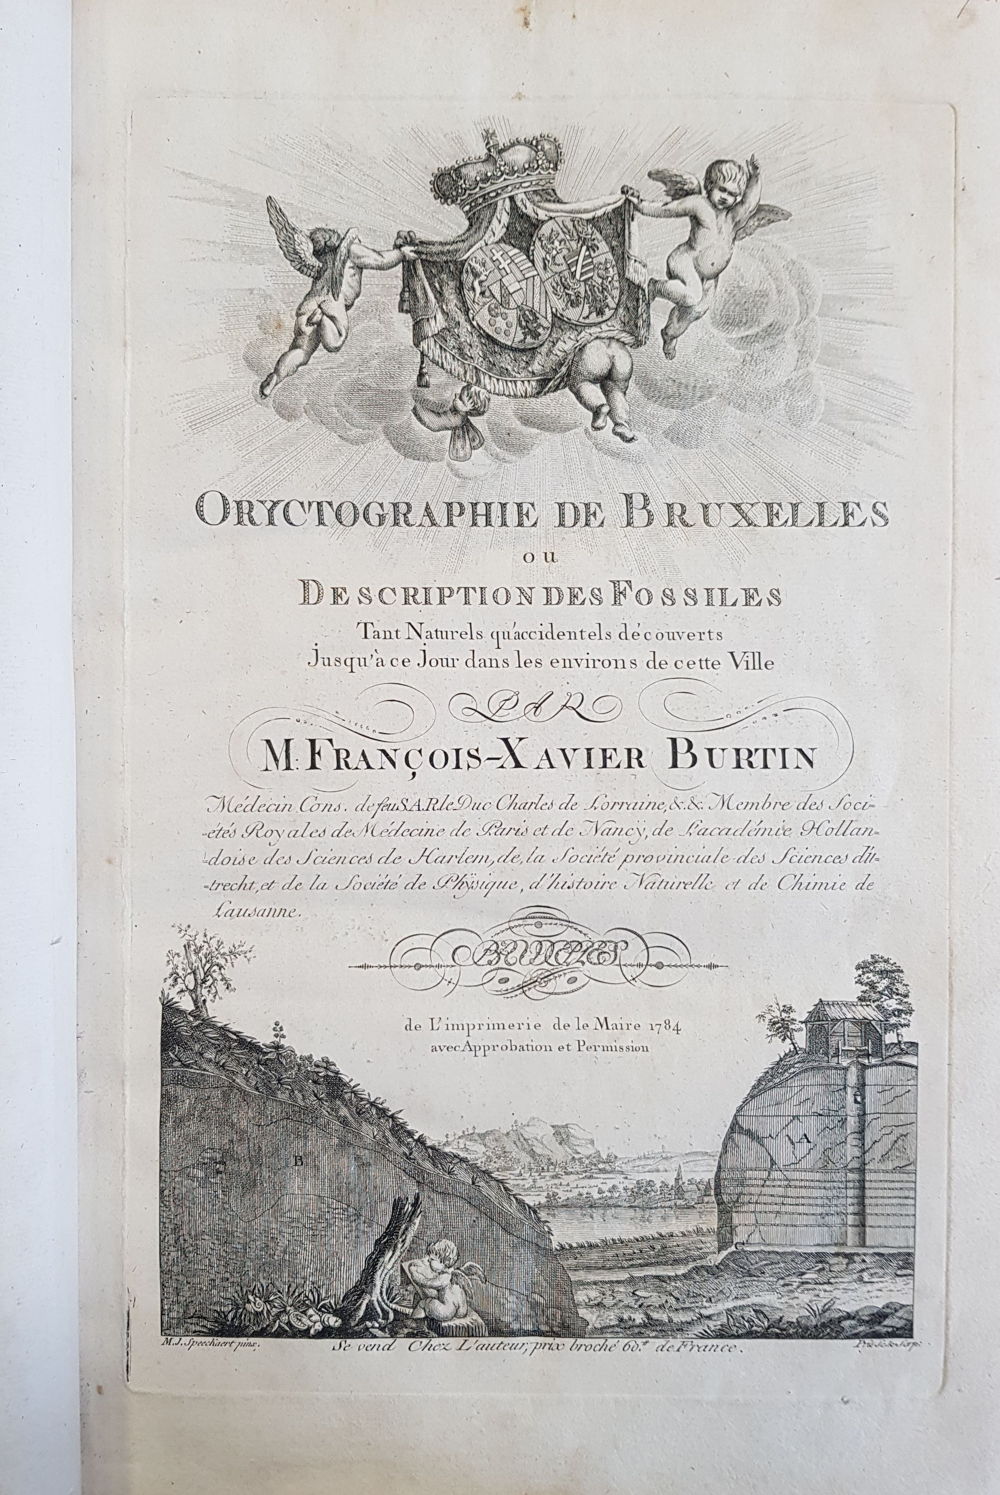 Oryctographie de Bruxelles (1784) - KBR, VB 4.125 C